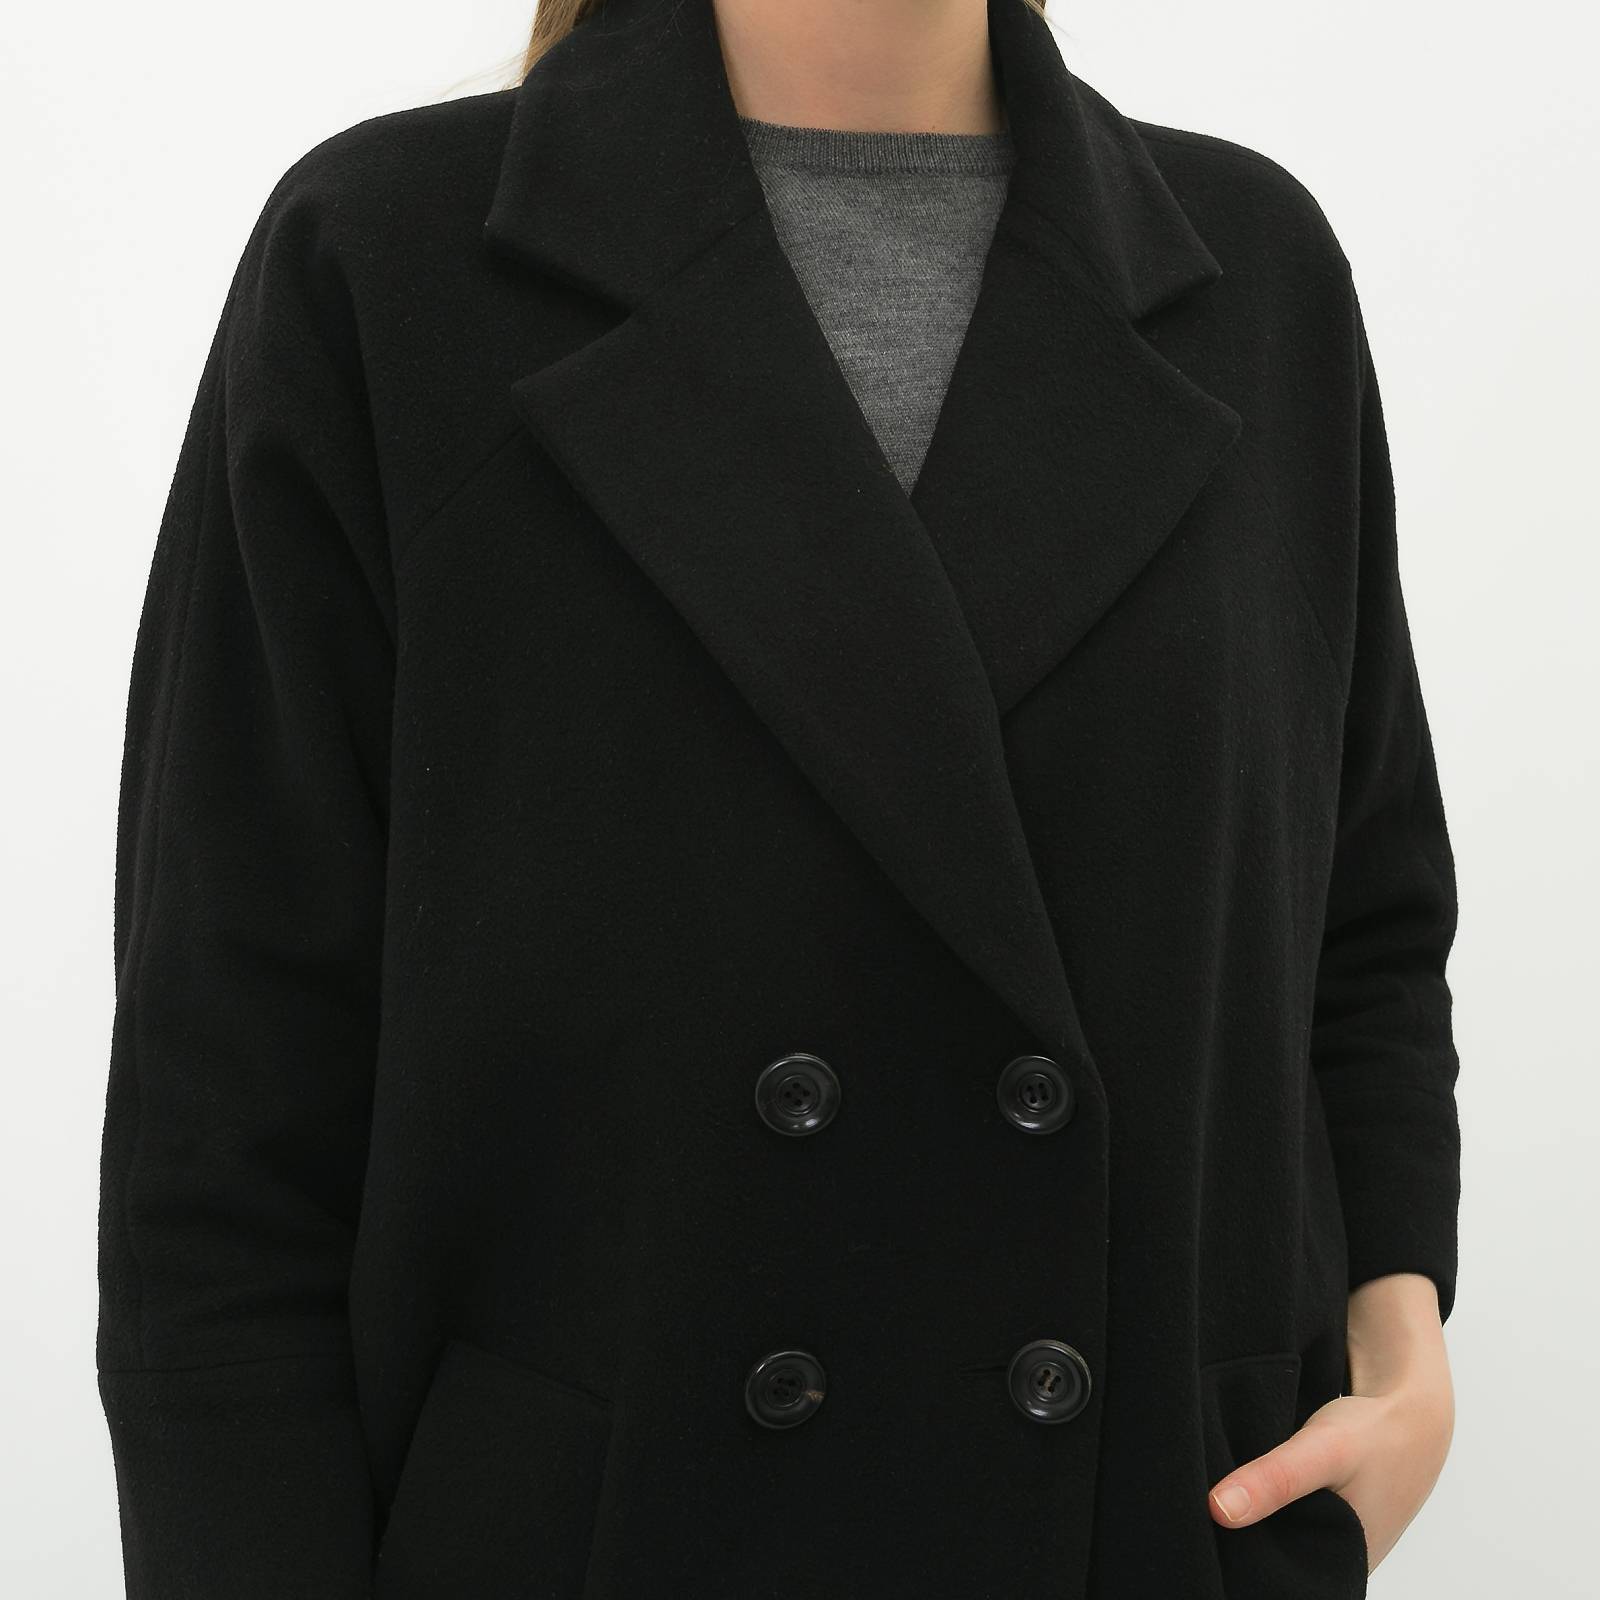 Пальто Diane von Furstenberg